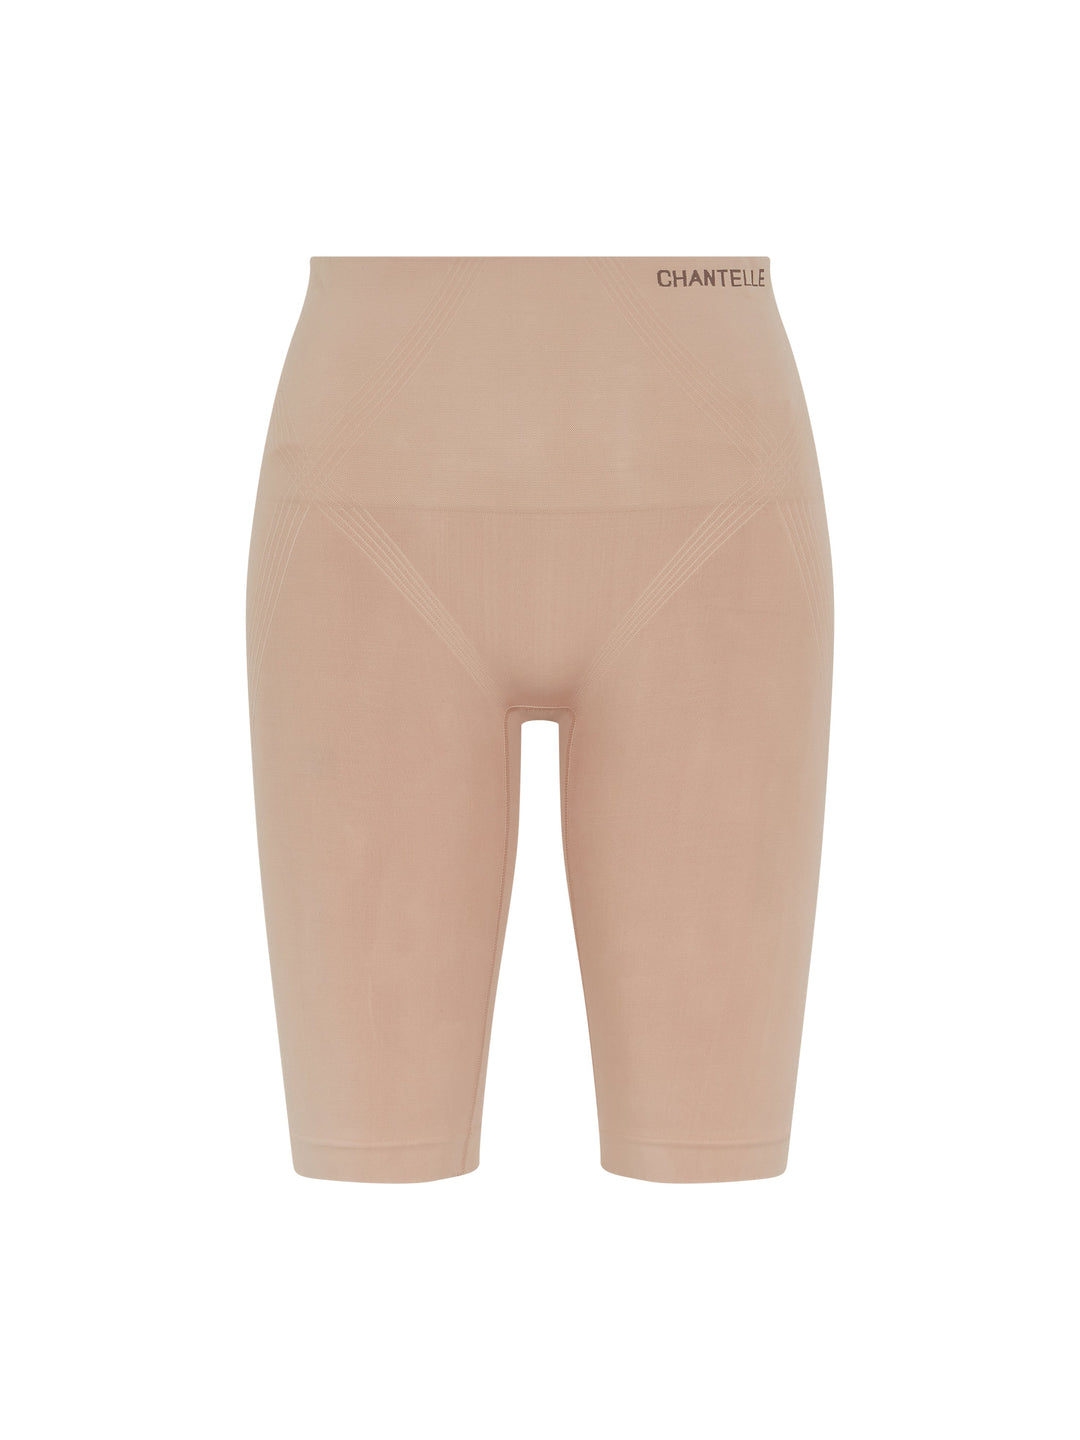 Pantalones cortos largos moldeadores Chantelle Smooth Comfort - Sirocco Shorts Chantelle